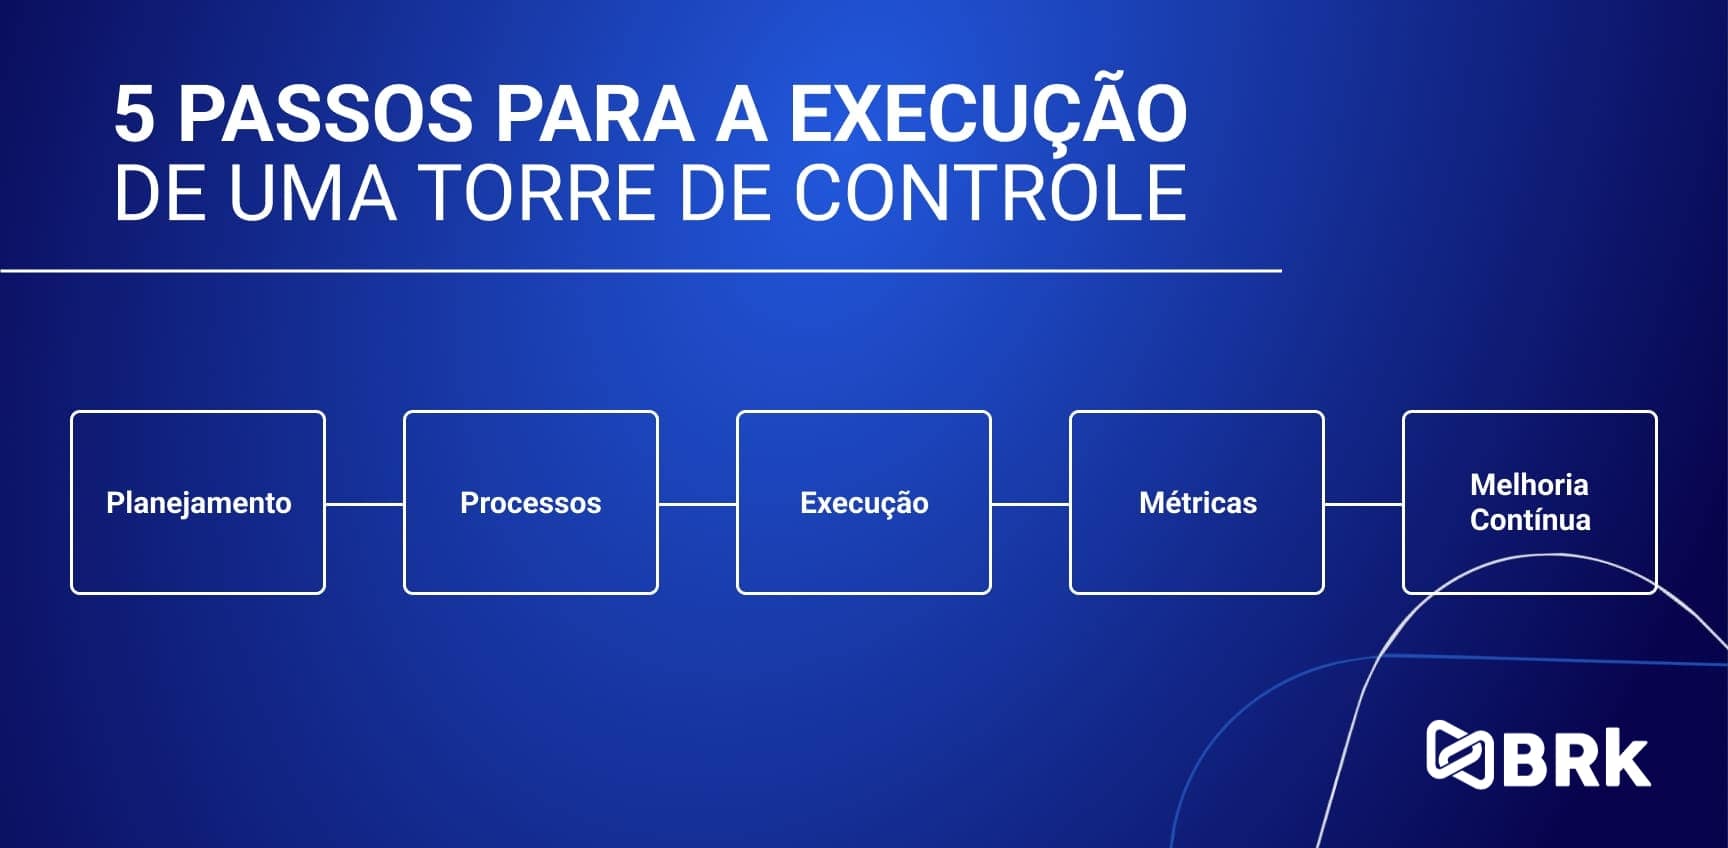 5 passos para a execução de uma Torre de Controle: planejamento, processo, execução, métricas e melhoria contínua